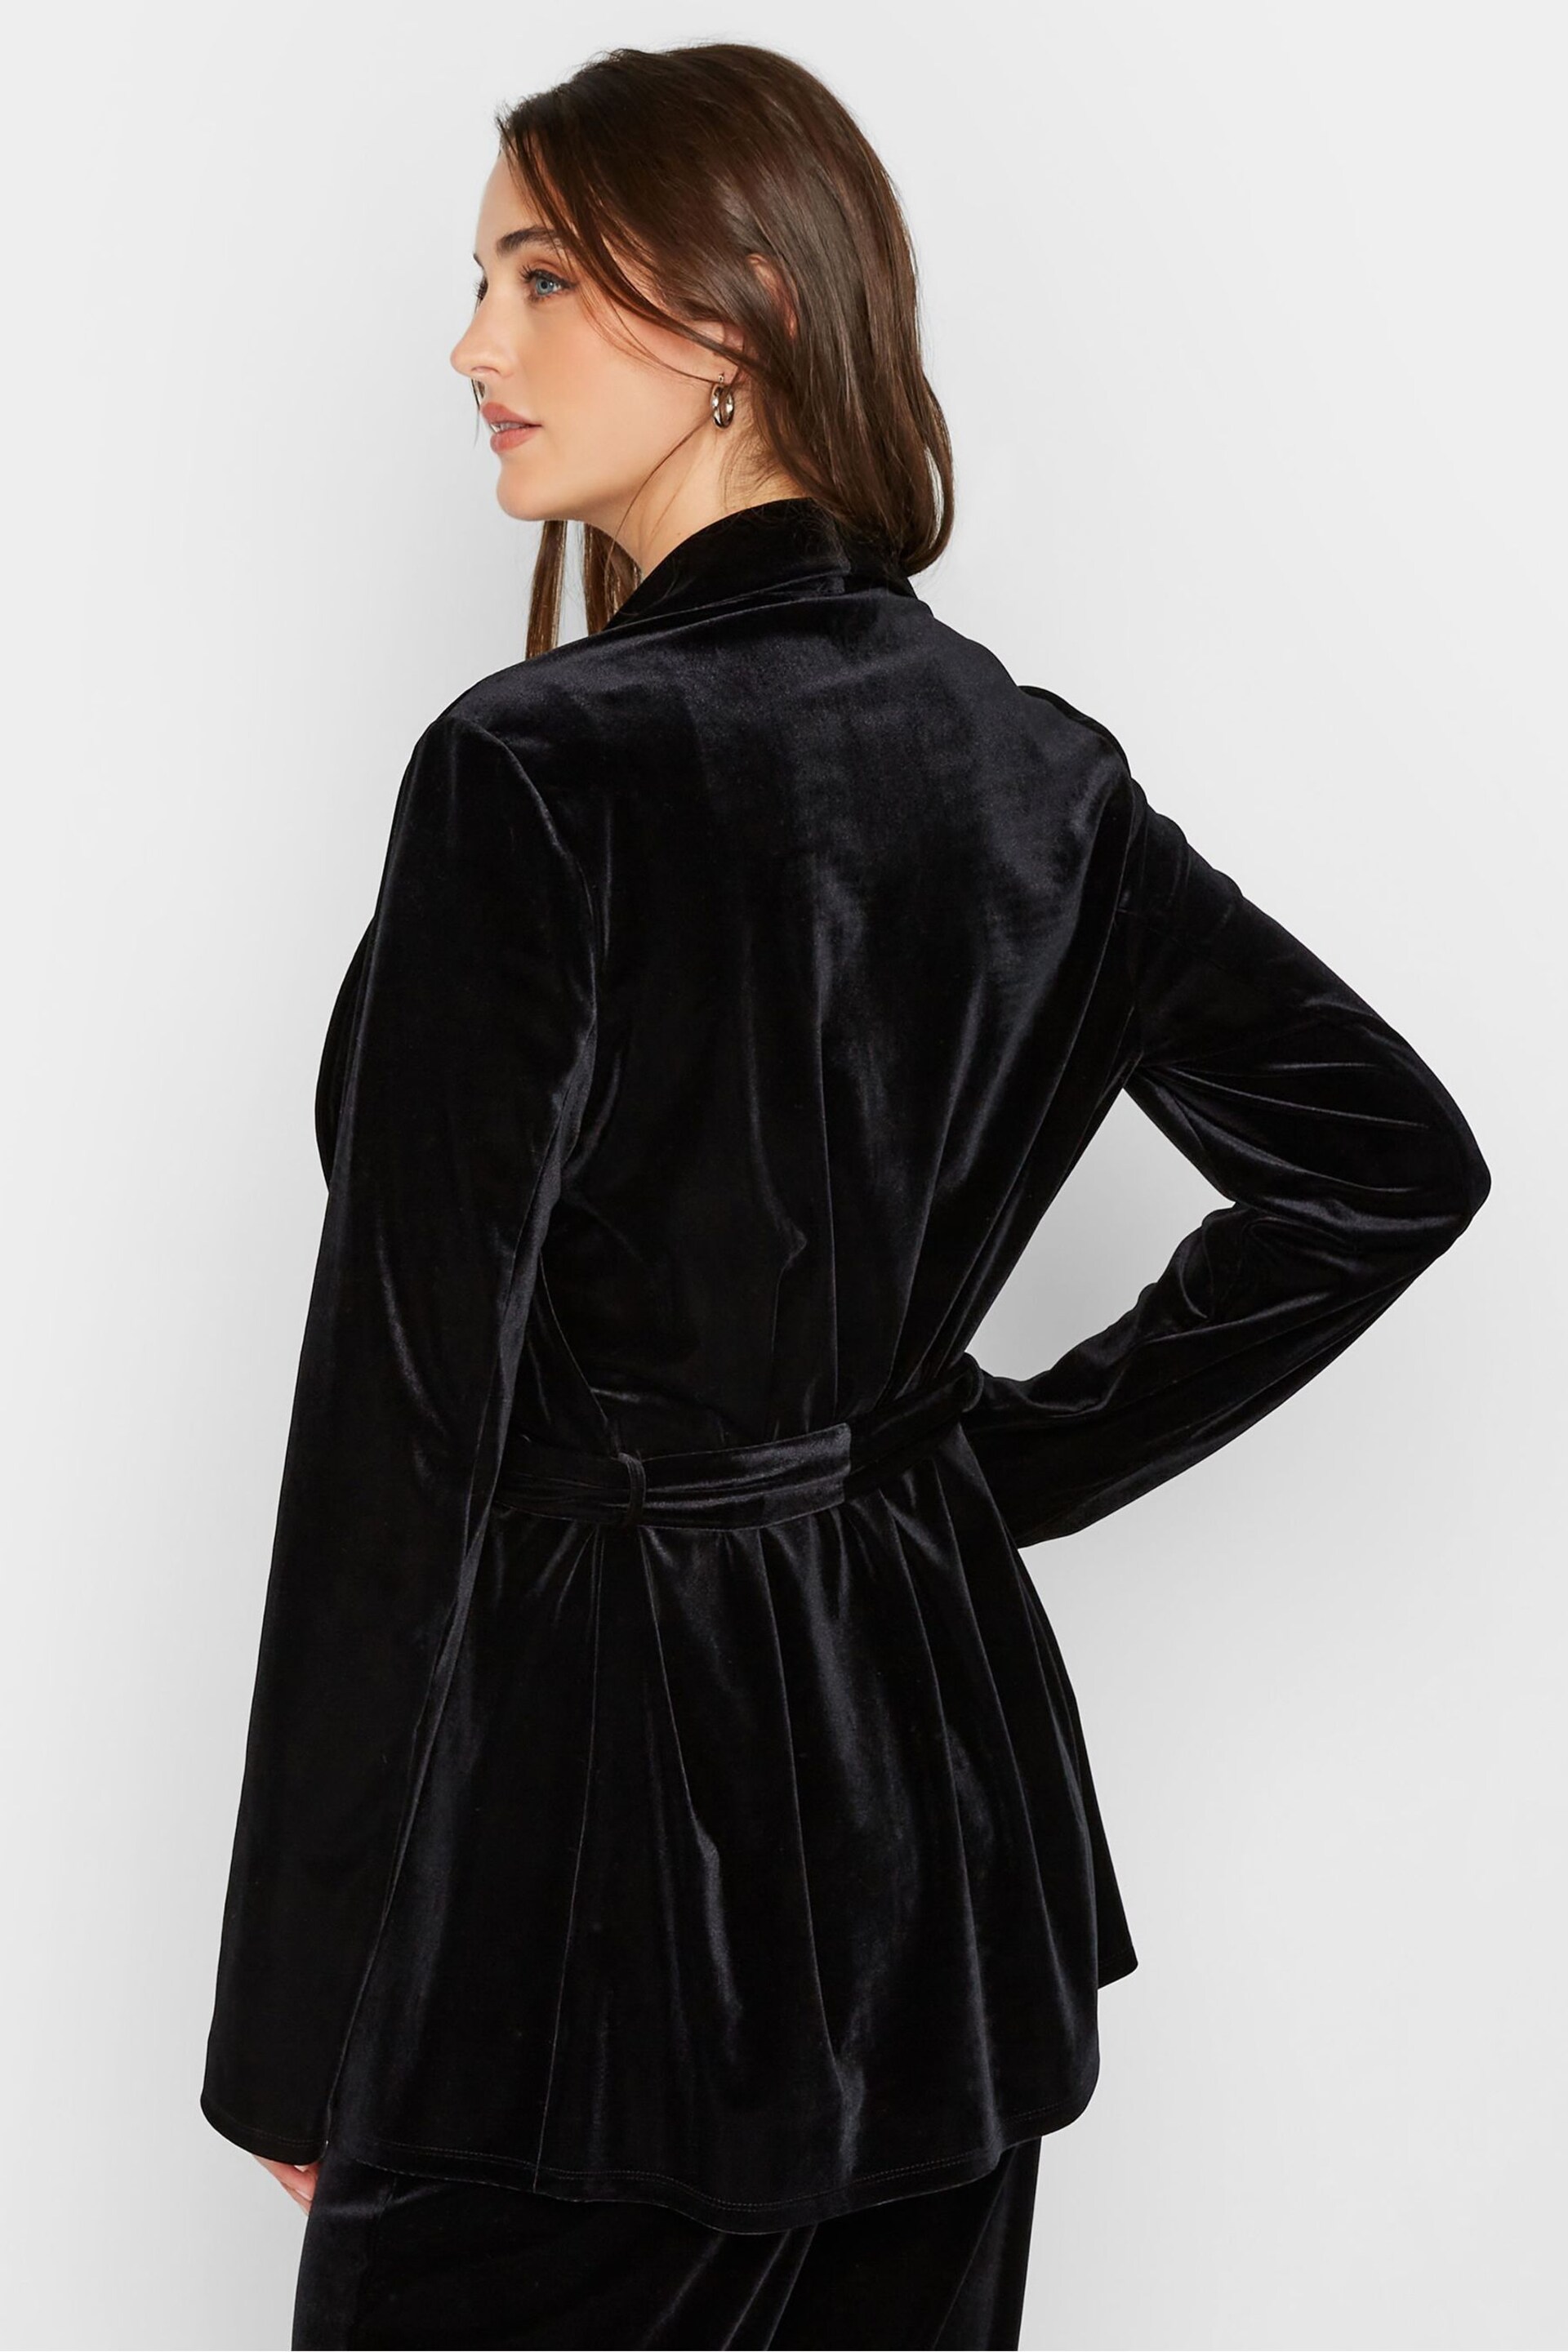 Long Tall Sally Black Velvet Belted Blazer - Image 2 of 4